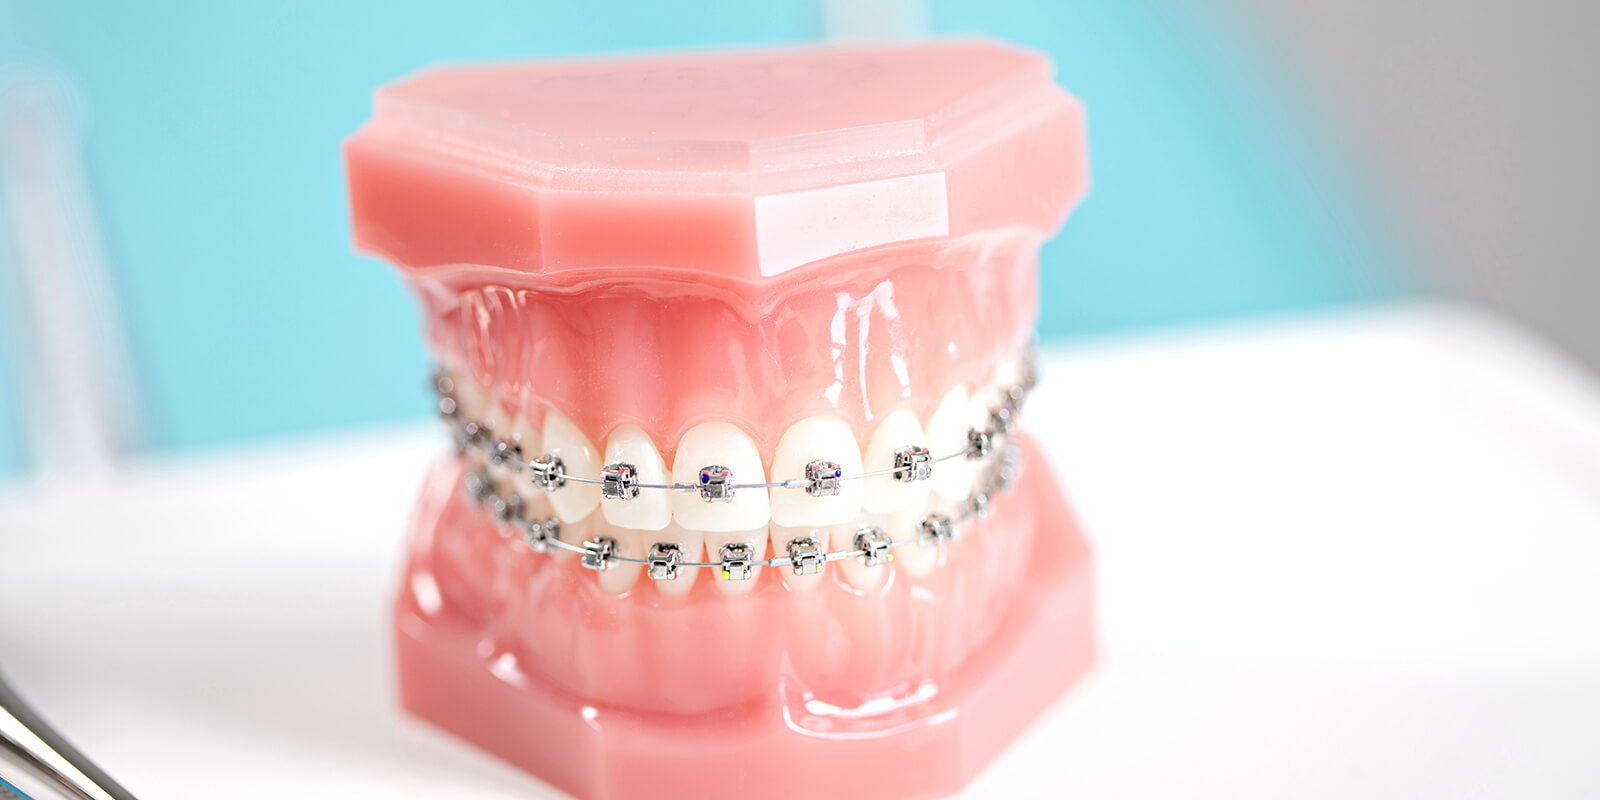 歯並びの矯正について